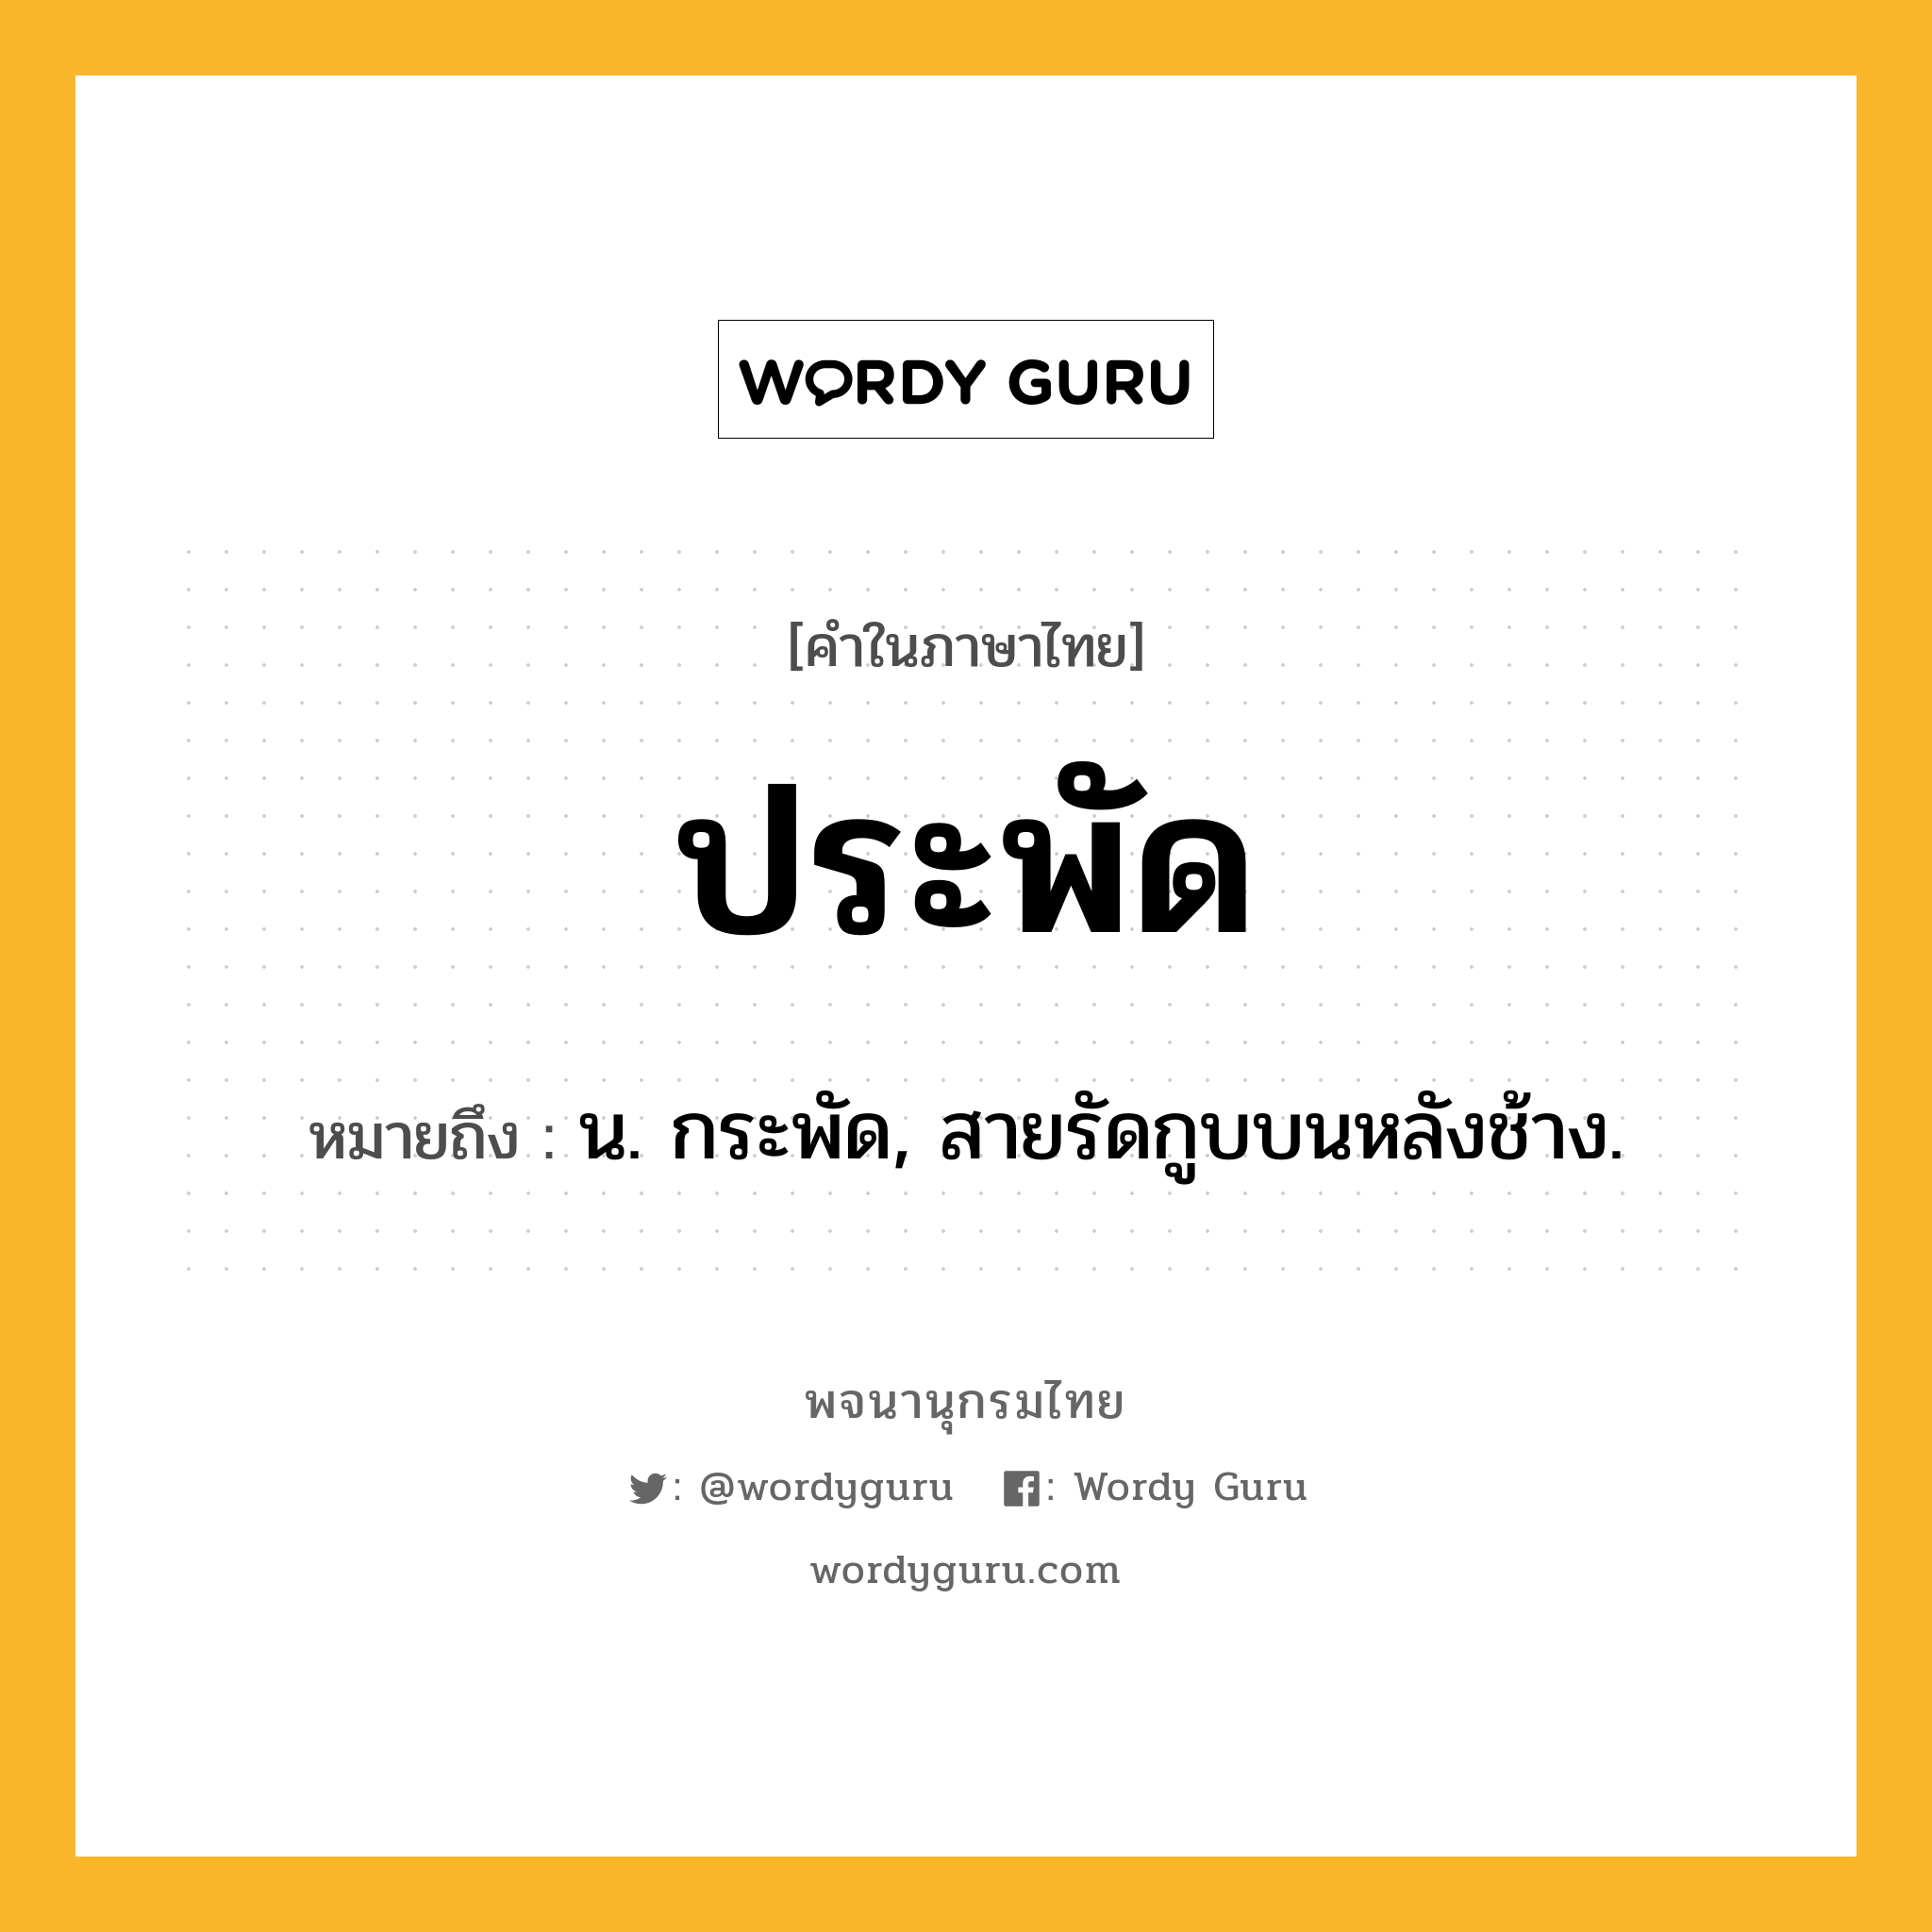 ประพัด หมายถึงอะไร?, คำในภาษาไทย ประพัด หมายถึง น. กระพัด, สายรัดกูบบนหลังช้าง.